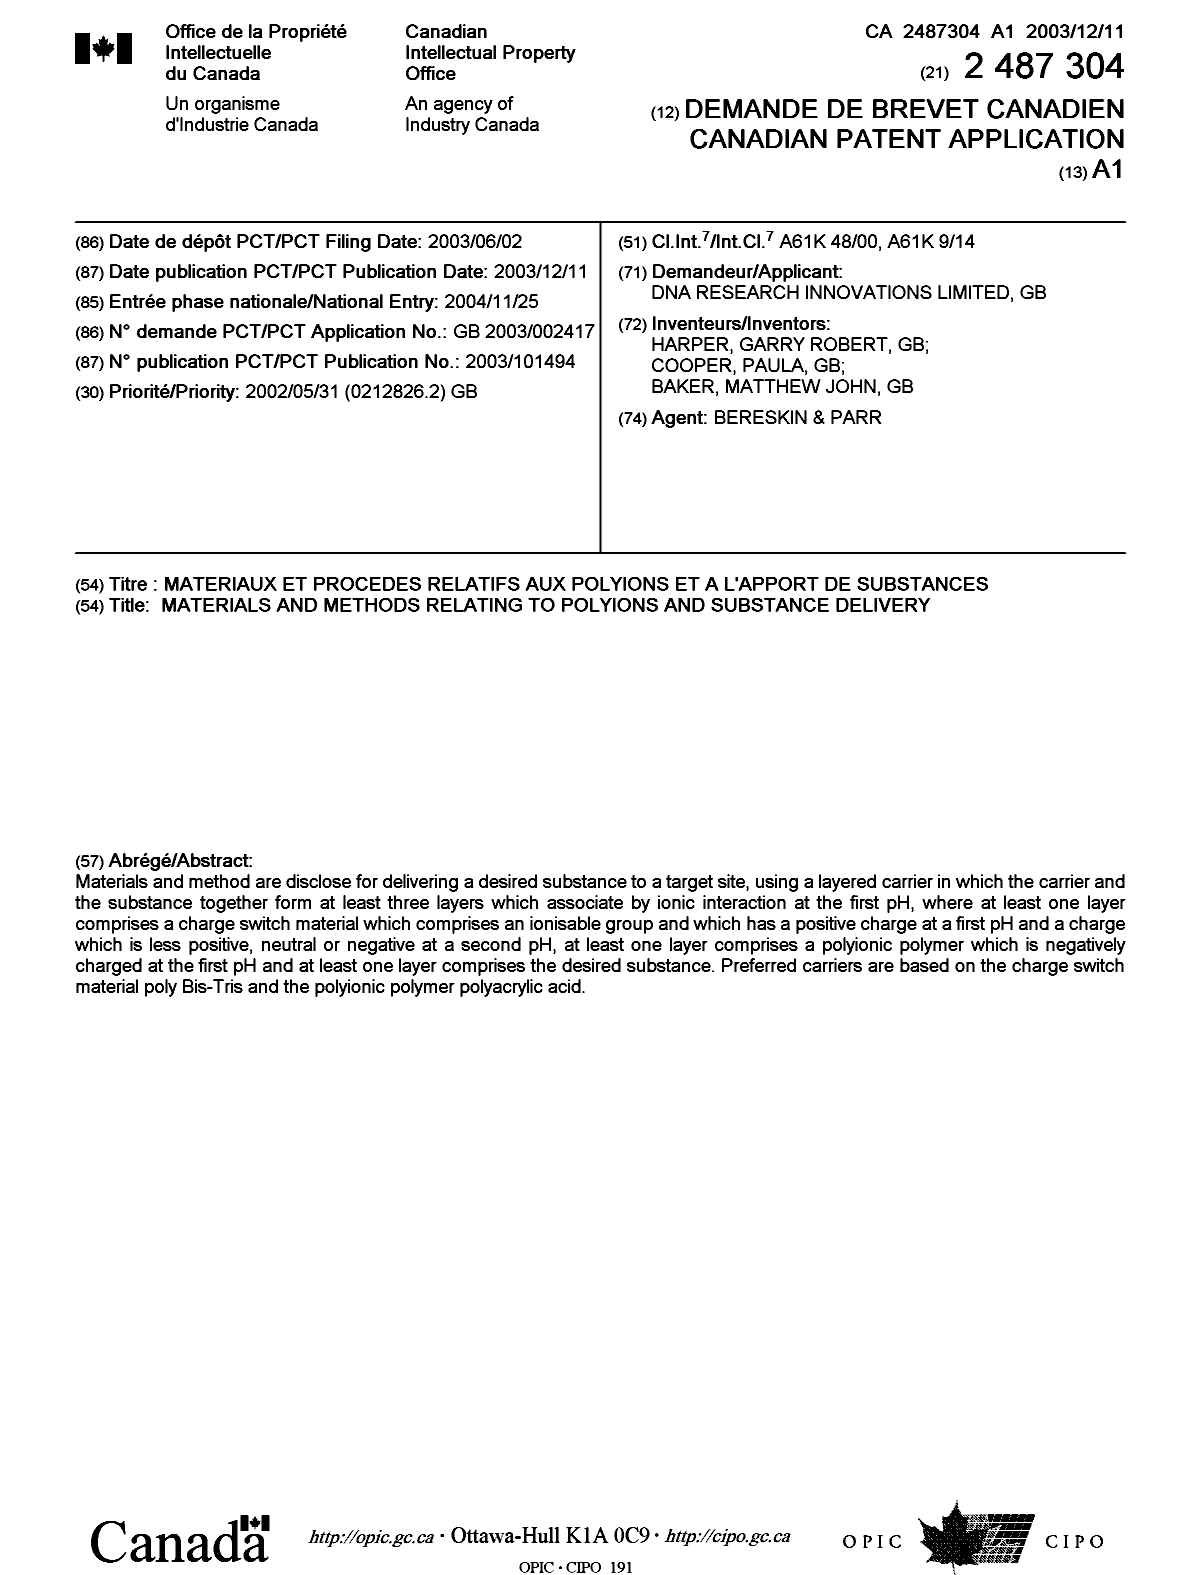 Document de brevet canadien 2487304. Page couverture 20050214. Image 1 de 1